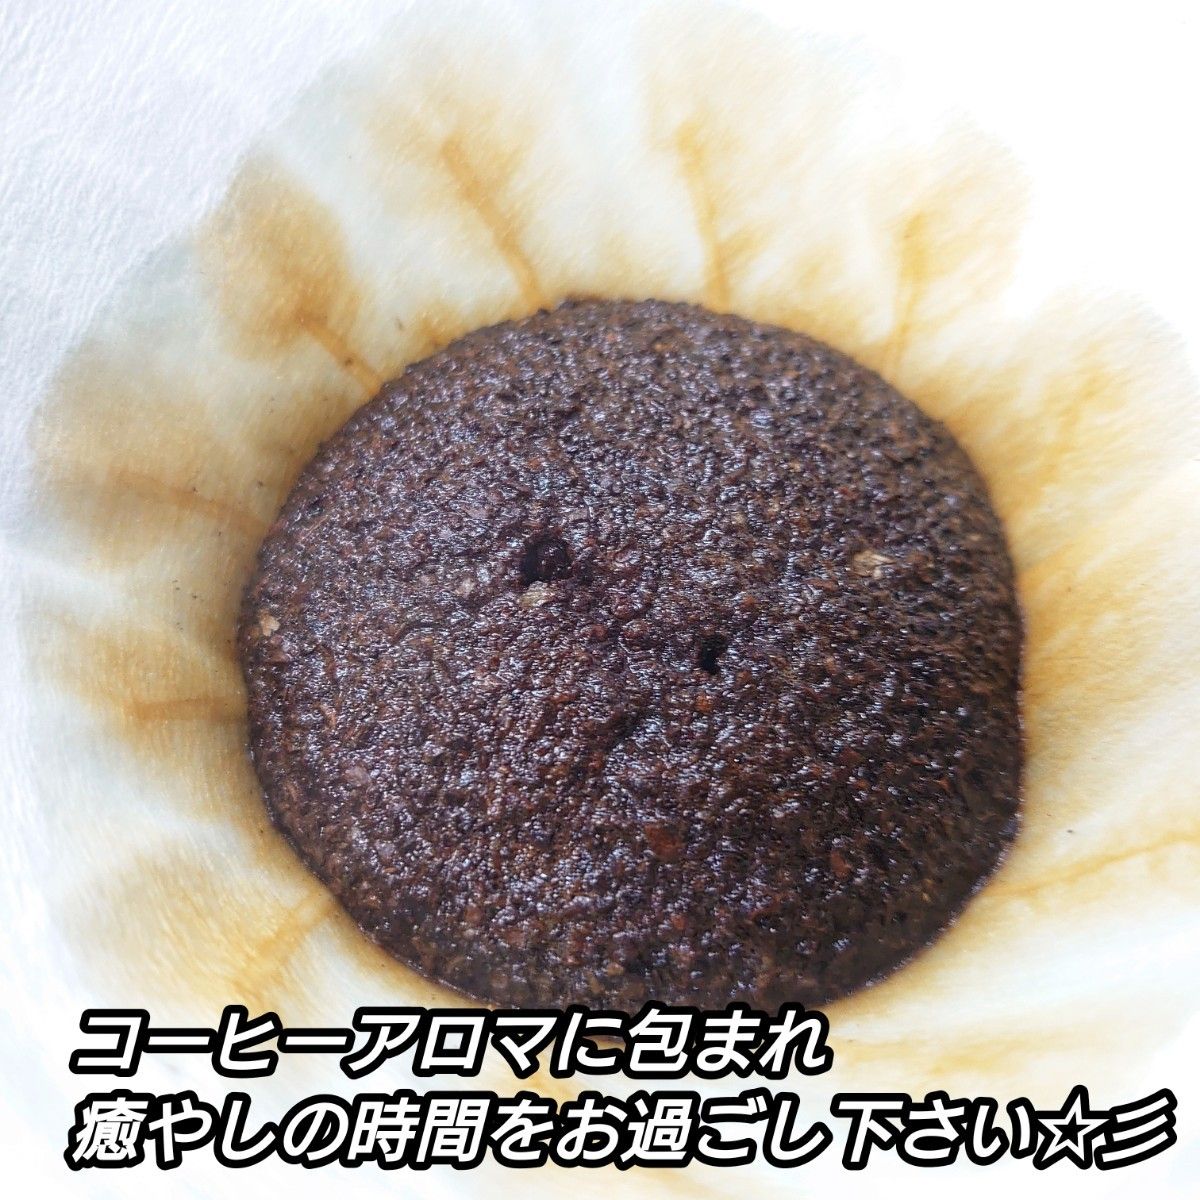 【粉】 モカ イルガチャフェ 生豆時 100g エチオピア コーヒー  珈琲 自家焙煎 コーヒー豆 モカコーヒー